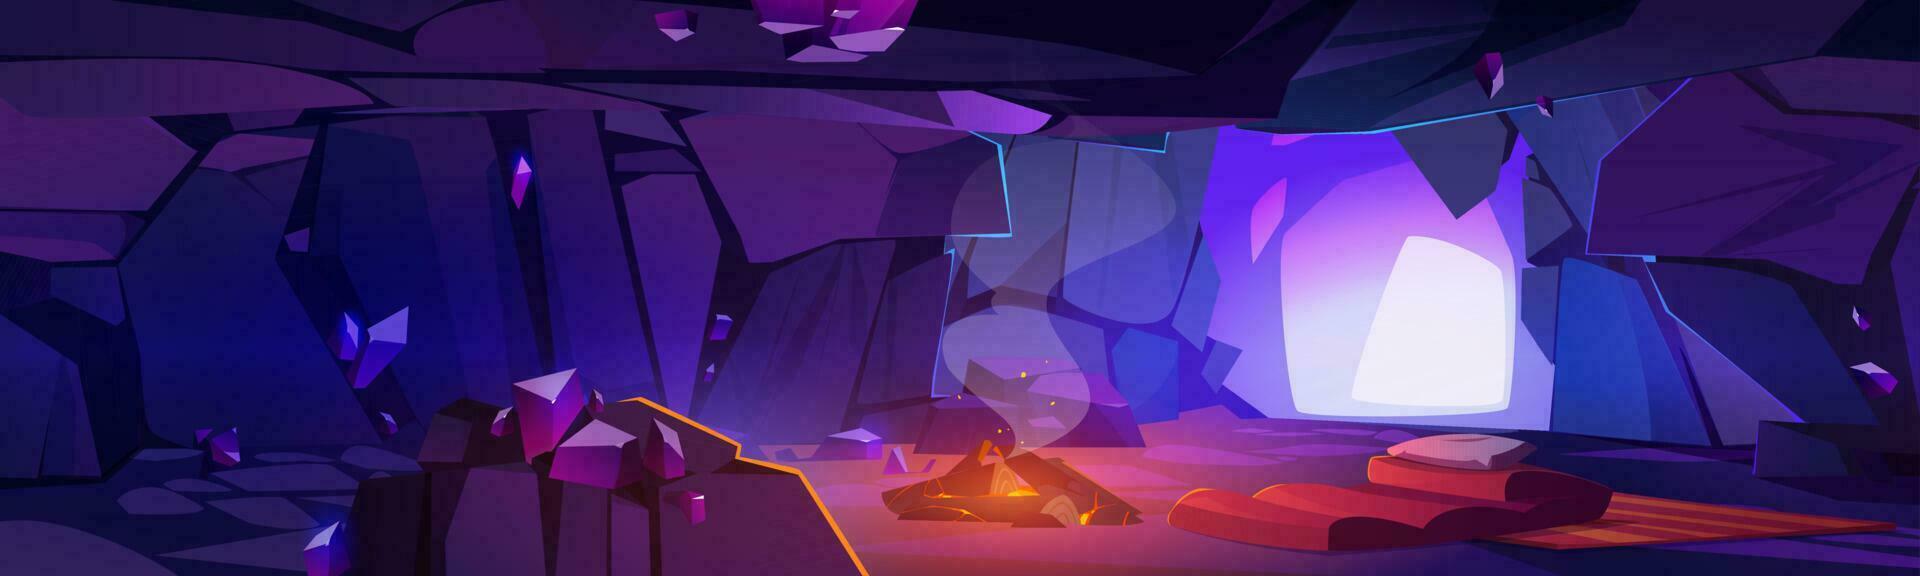 dunkel Höhle Innerhalb Szene zum Fantasie Spiel Hintergrund vektor